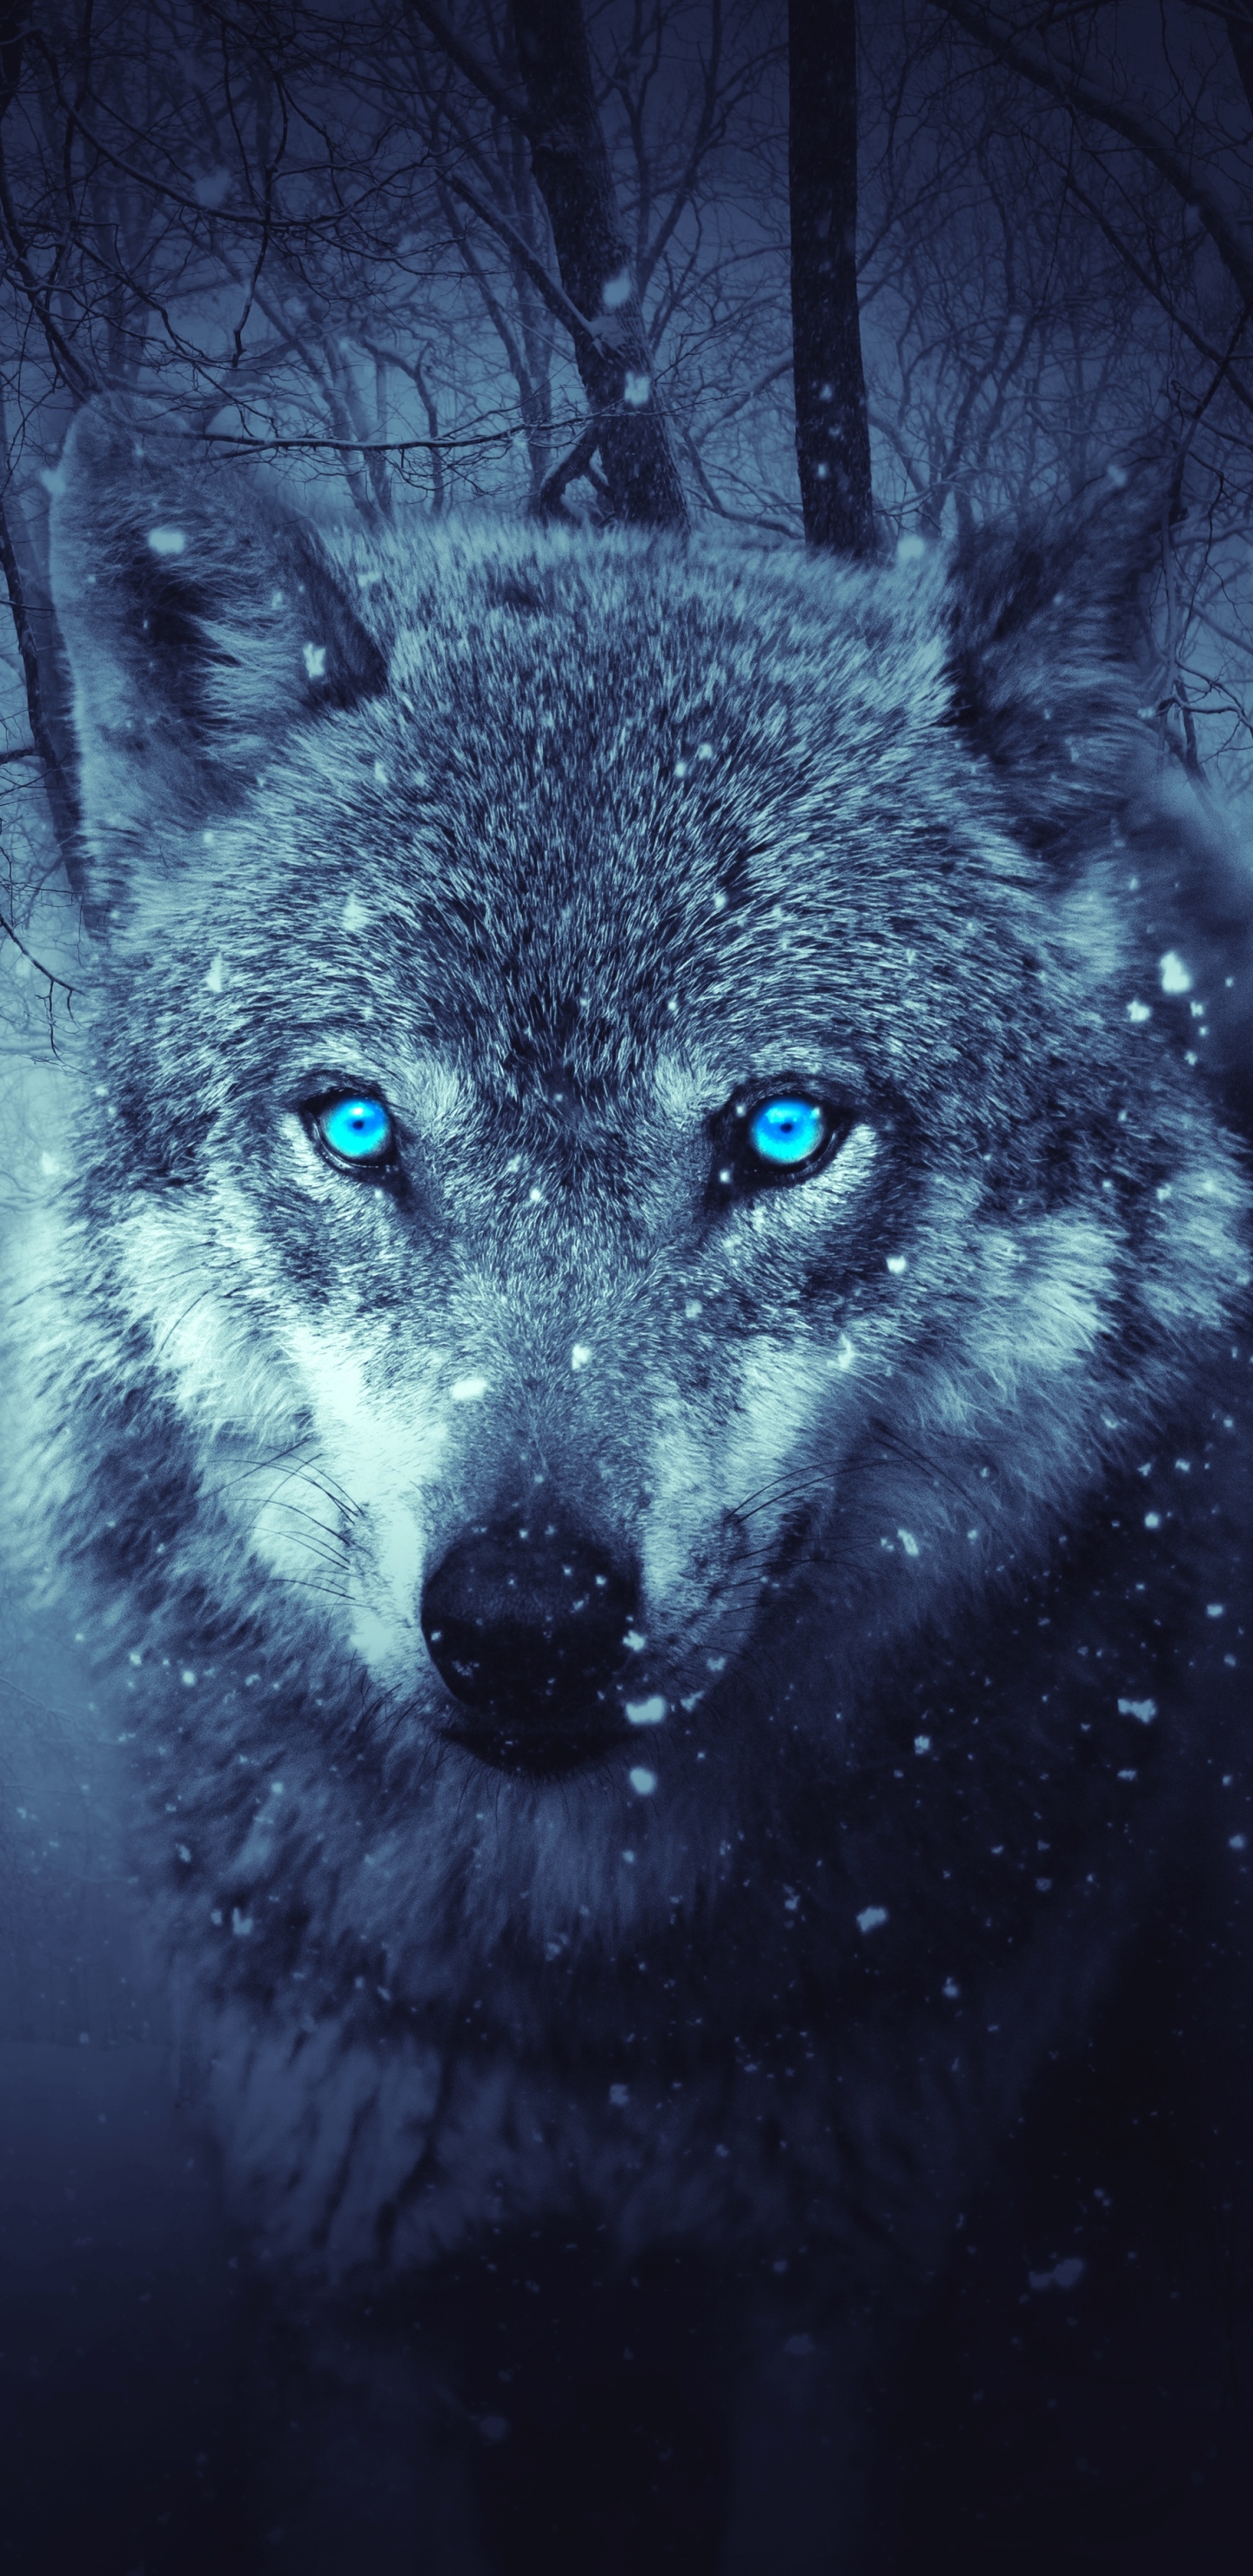 Fantasy Wolf in a Dark Winter Forest by Yuri_B